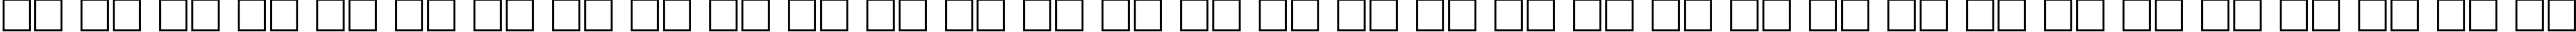 Пример написания русского алфавита шрифтом Hoffmann Regular